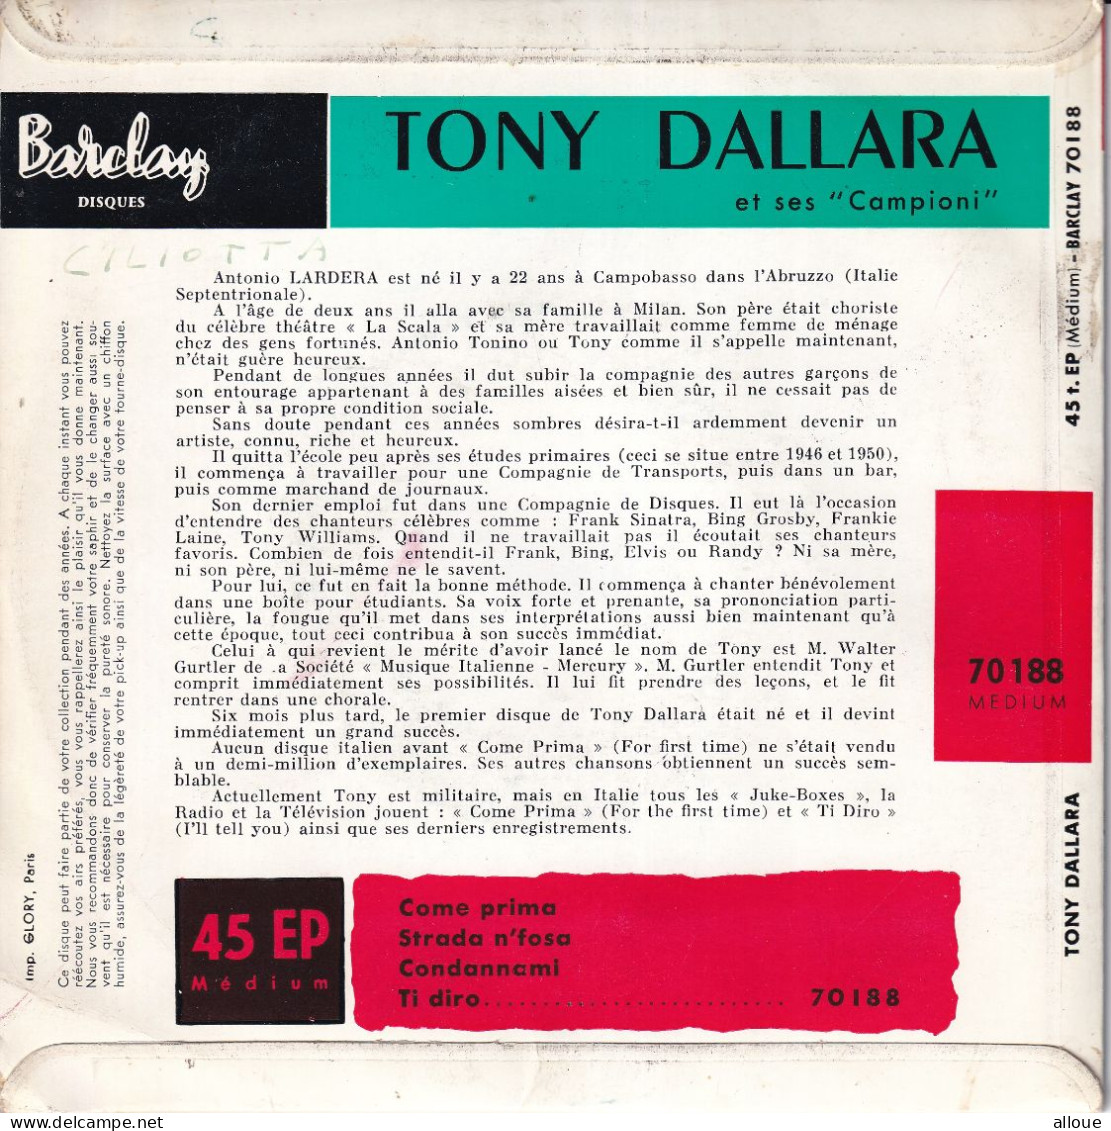 TONY DALLARA - FR EP -  COME PRIMA + 3 - Altri - Musica Italiana